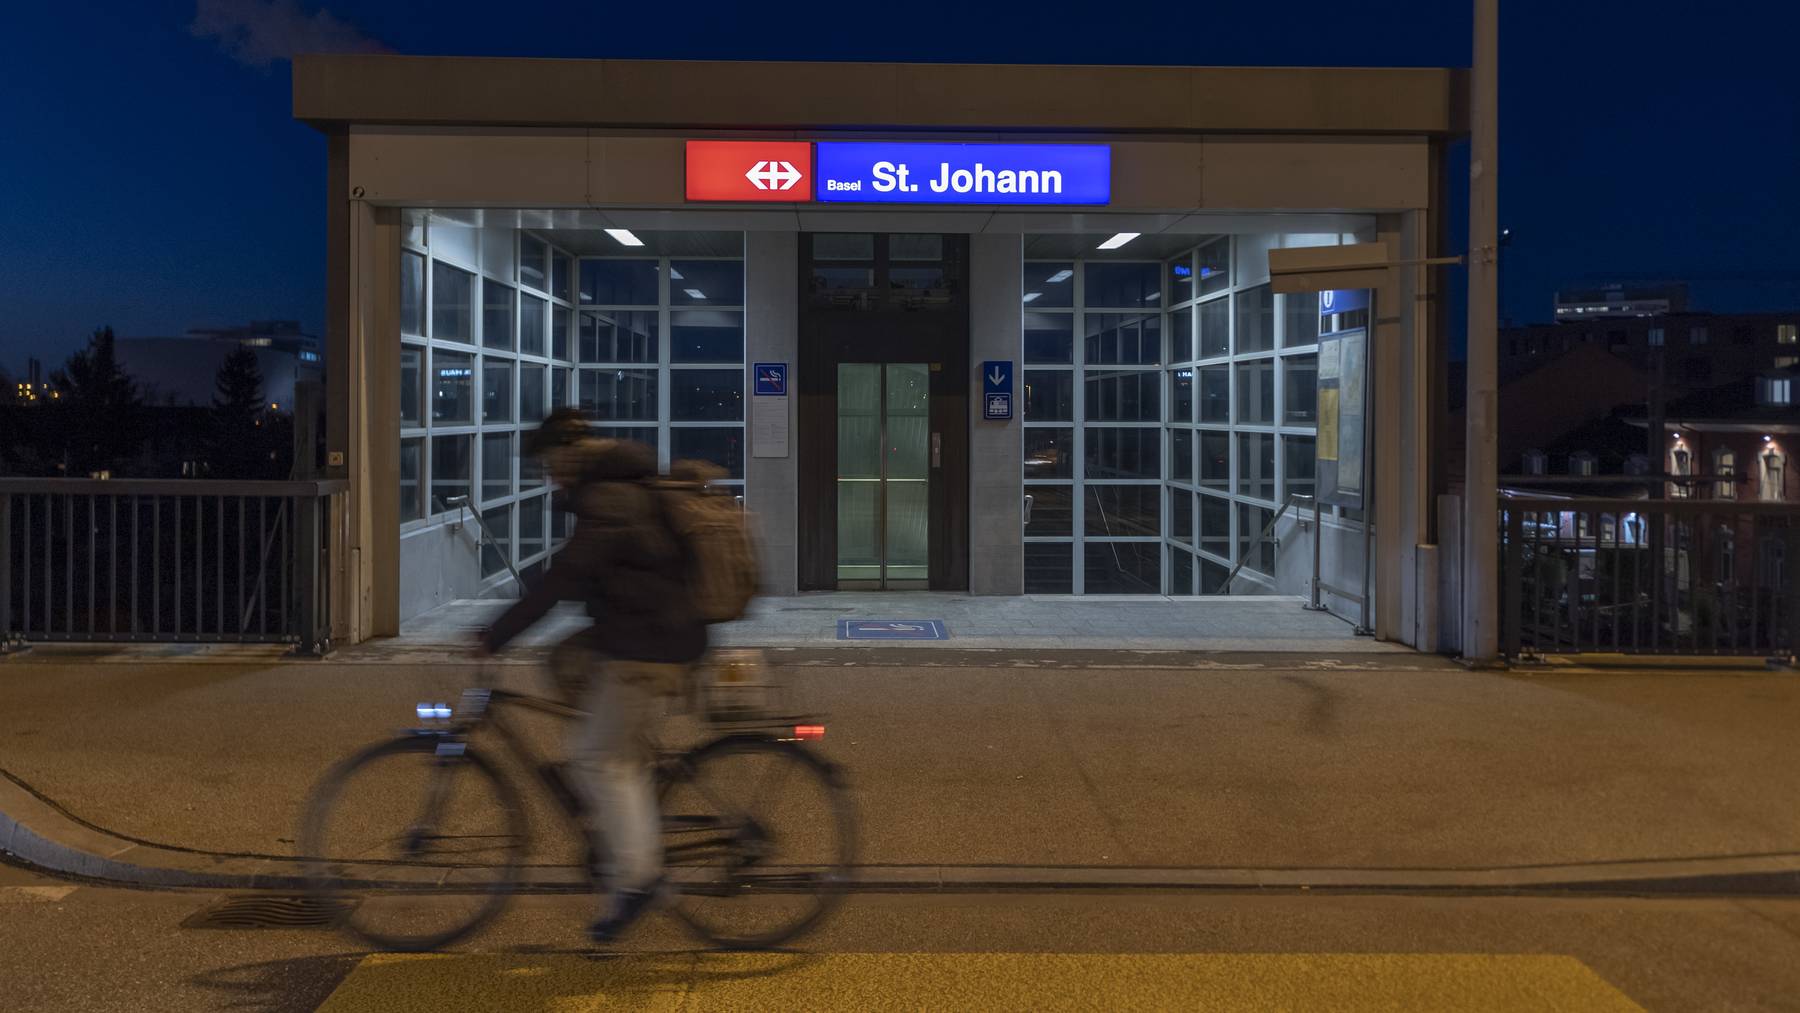 Der Bahnhof St. Johann im Abendlicht in Basel, am Donnerstag, 16. Januar 2020.